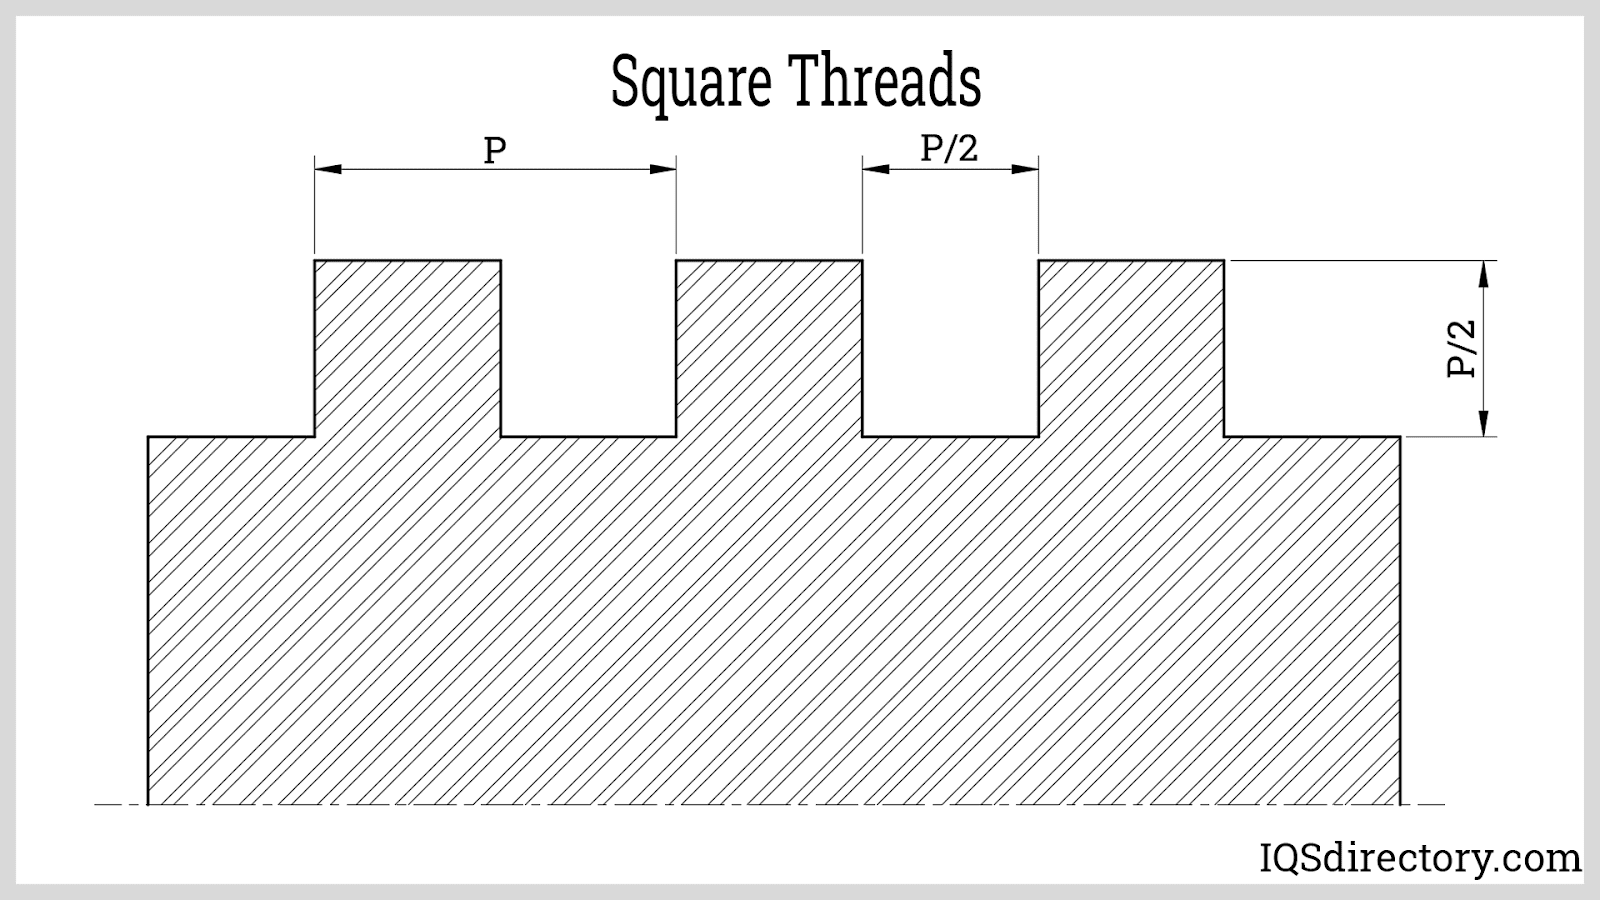 Square Threads